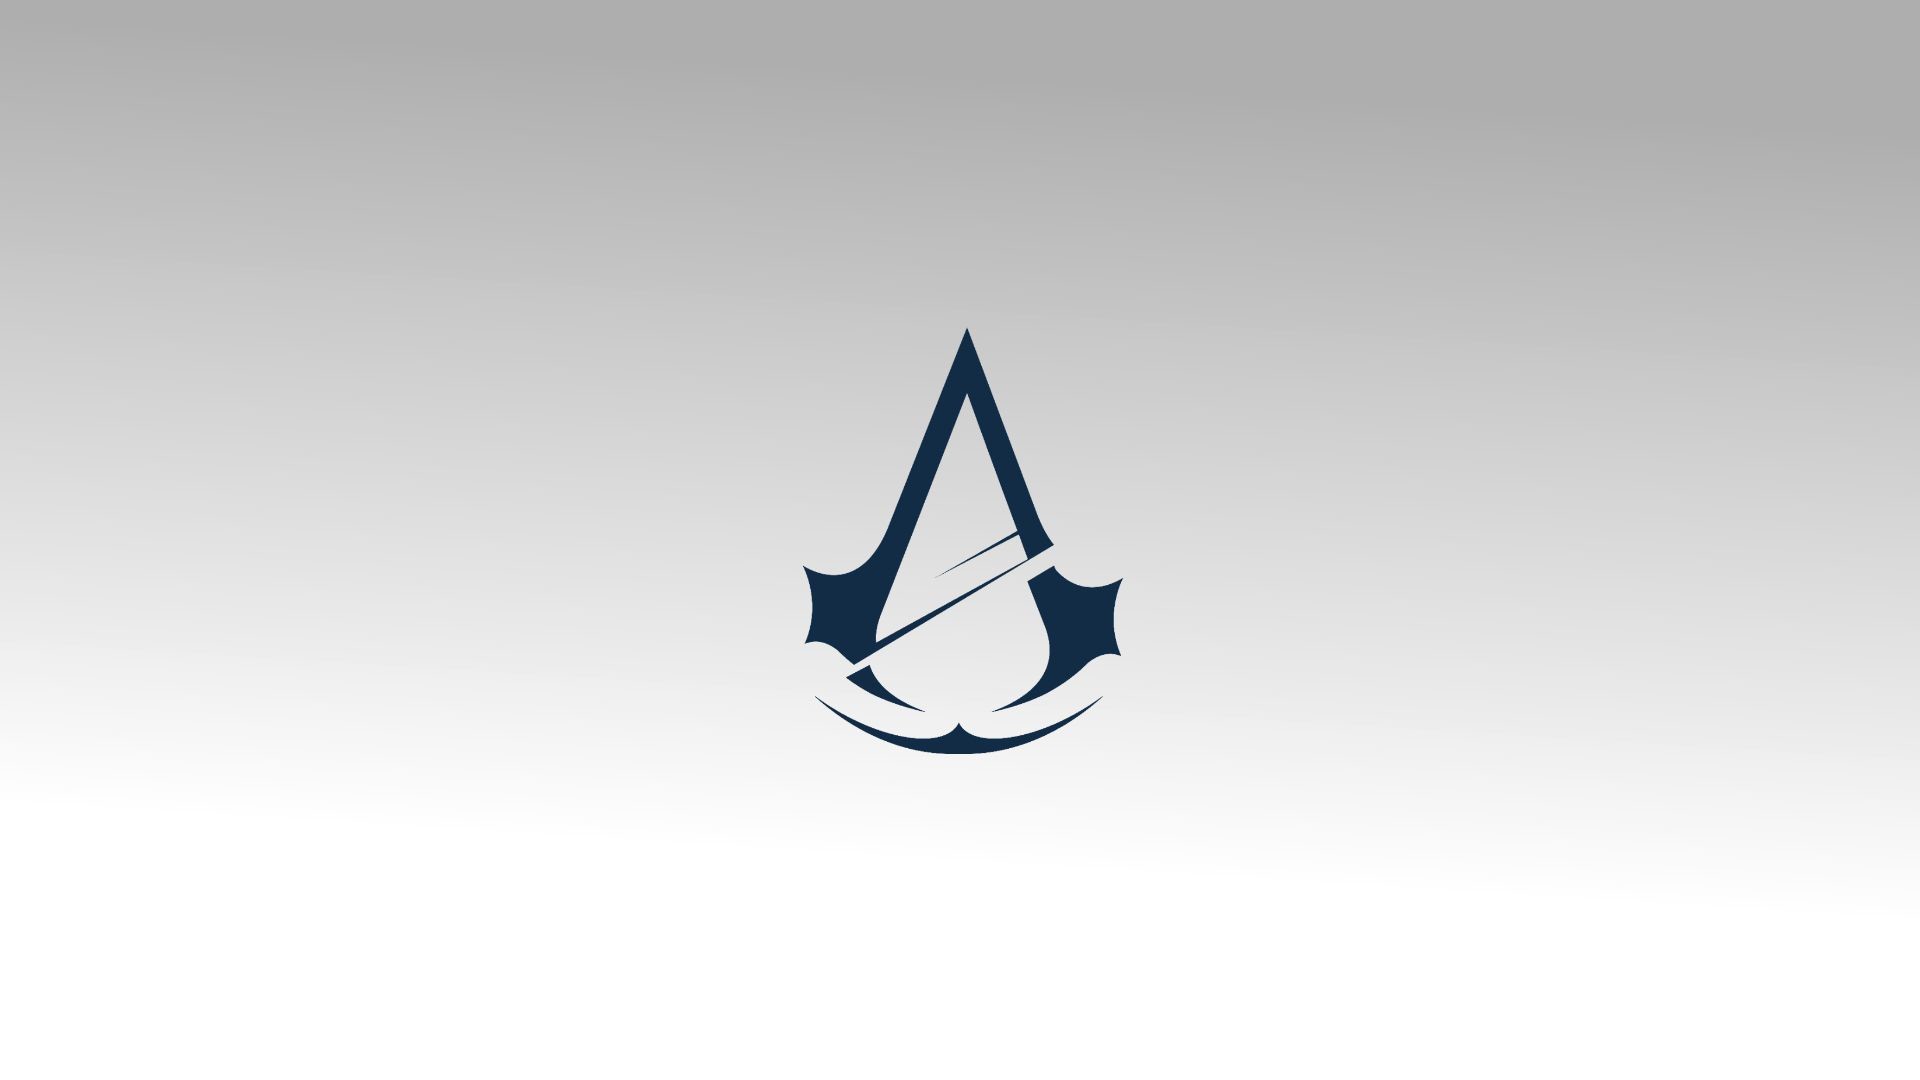 Assasins Creed Wallpaper - Assassin's Creed Logo Wallpaper Hd , HD Wallpaper & Backgrounds